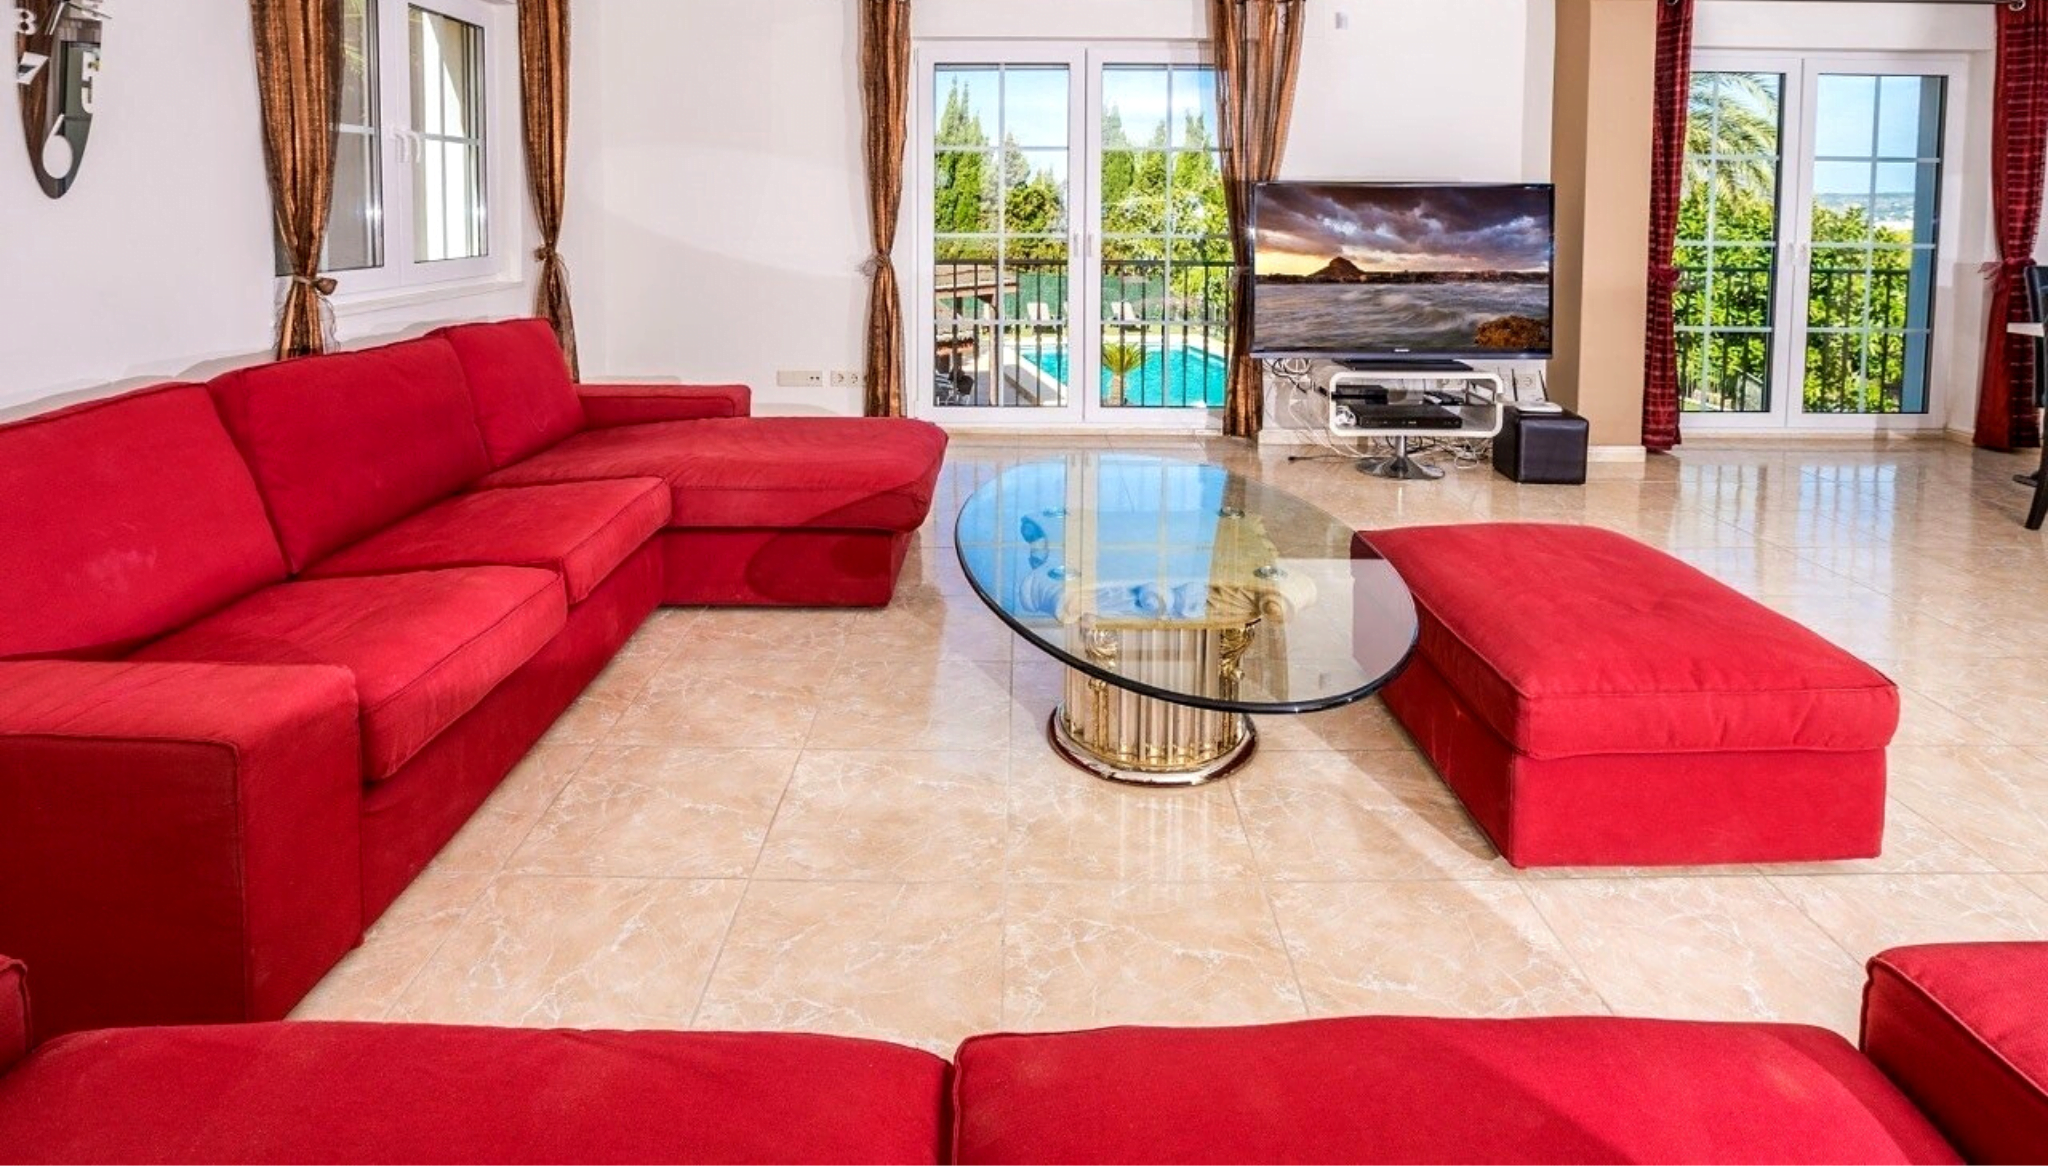 Salón amplio y amueblado con sofás lounge rojos